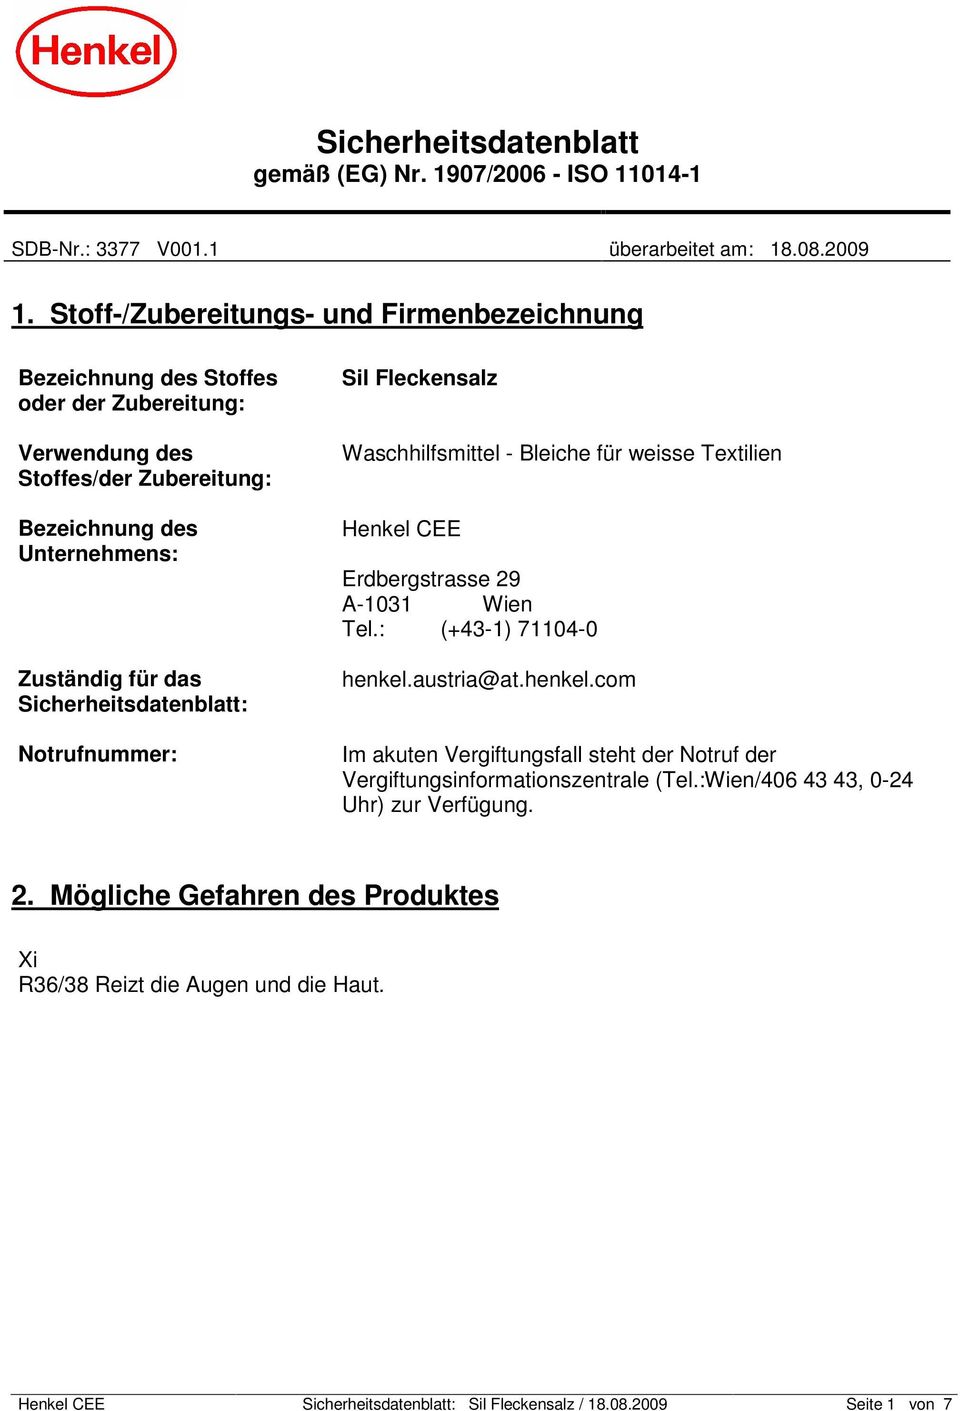 Sicherheitsdatenblatt: Notrufnummer: Sil Fleckensalz Waschhilfsmittel - Bleiche für weisse Textilien Henkel CEE Erdbergstrasse 29 A-1031 Wien Tel.: (+43-1) 71104-0 henkel.